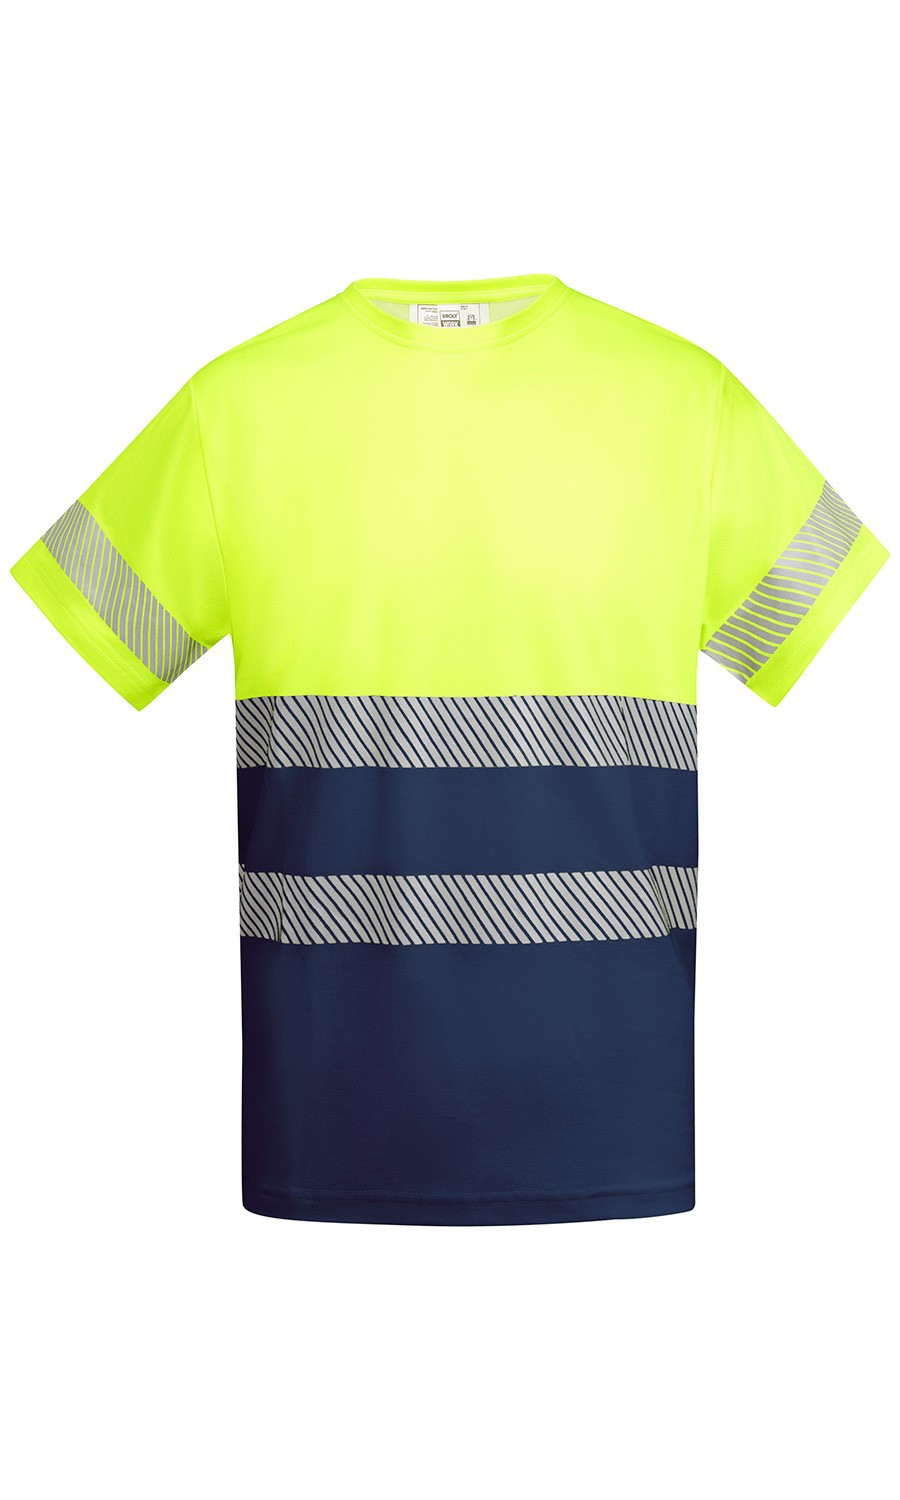 bibliotecario Sala Permuta Camiseta Técnica Bicolor Alta Visibilidad. 55% Alg./45% Pol. 170 g/m² -  euroUniforms